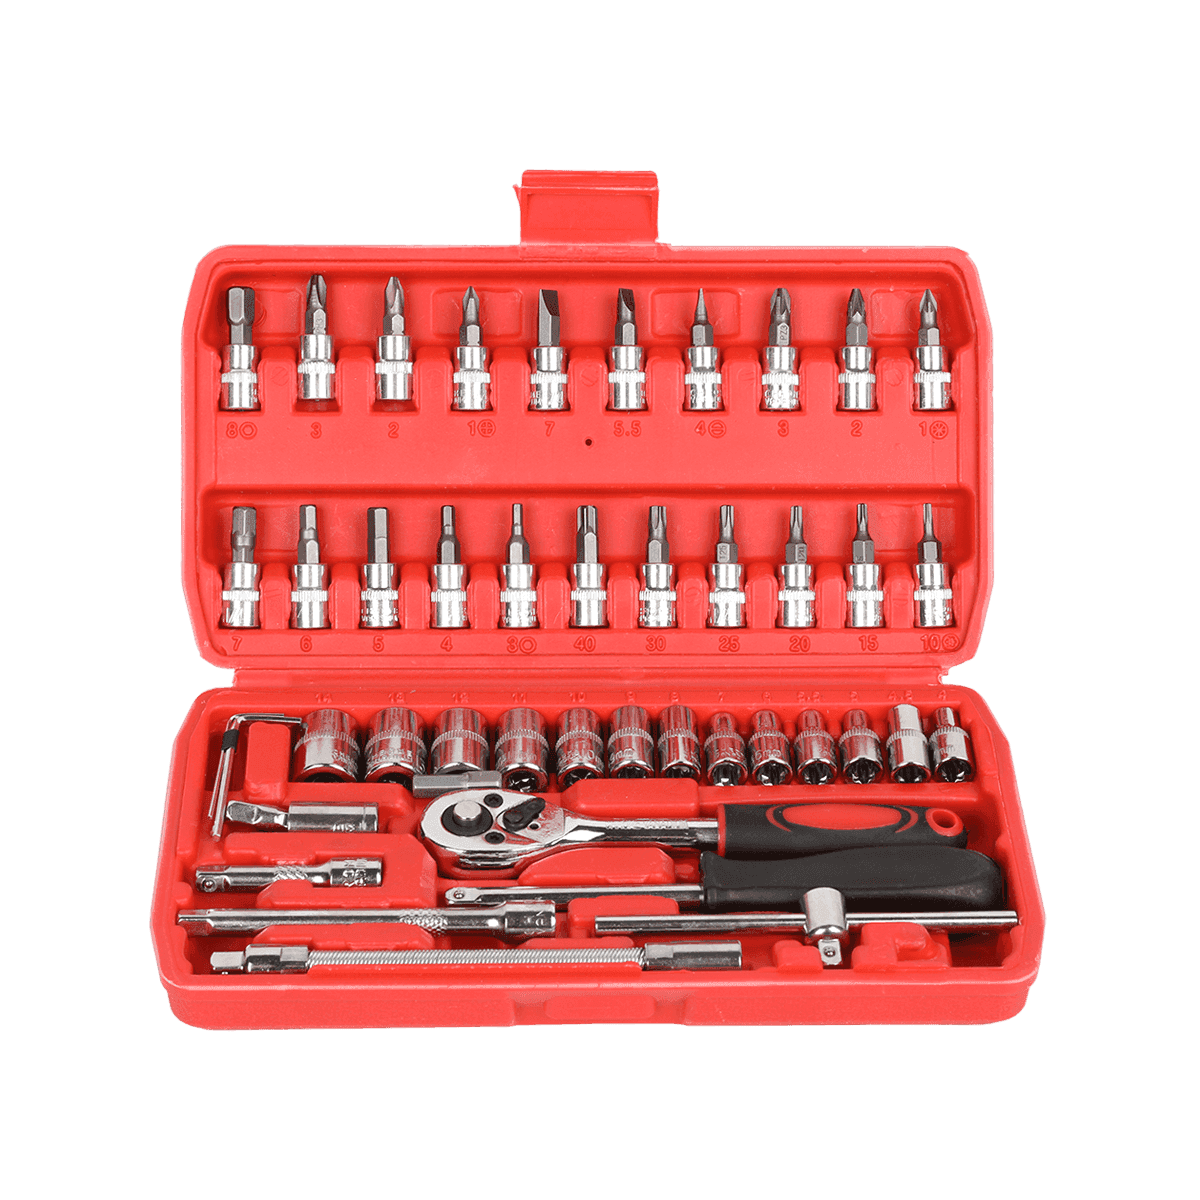 46 komada 1/4' dr Crv čelični metrički alat za popravak automobila Set alata za nasadne ključeve s ručkom sa čegrtaljkom